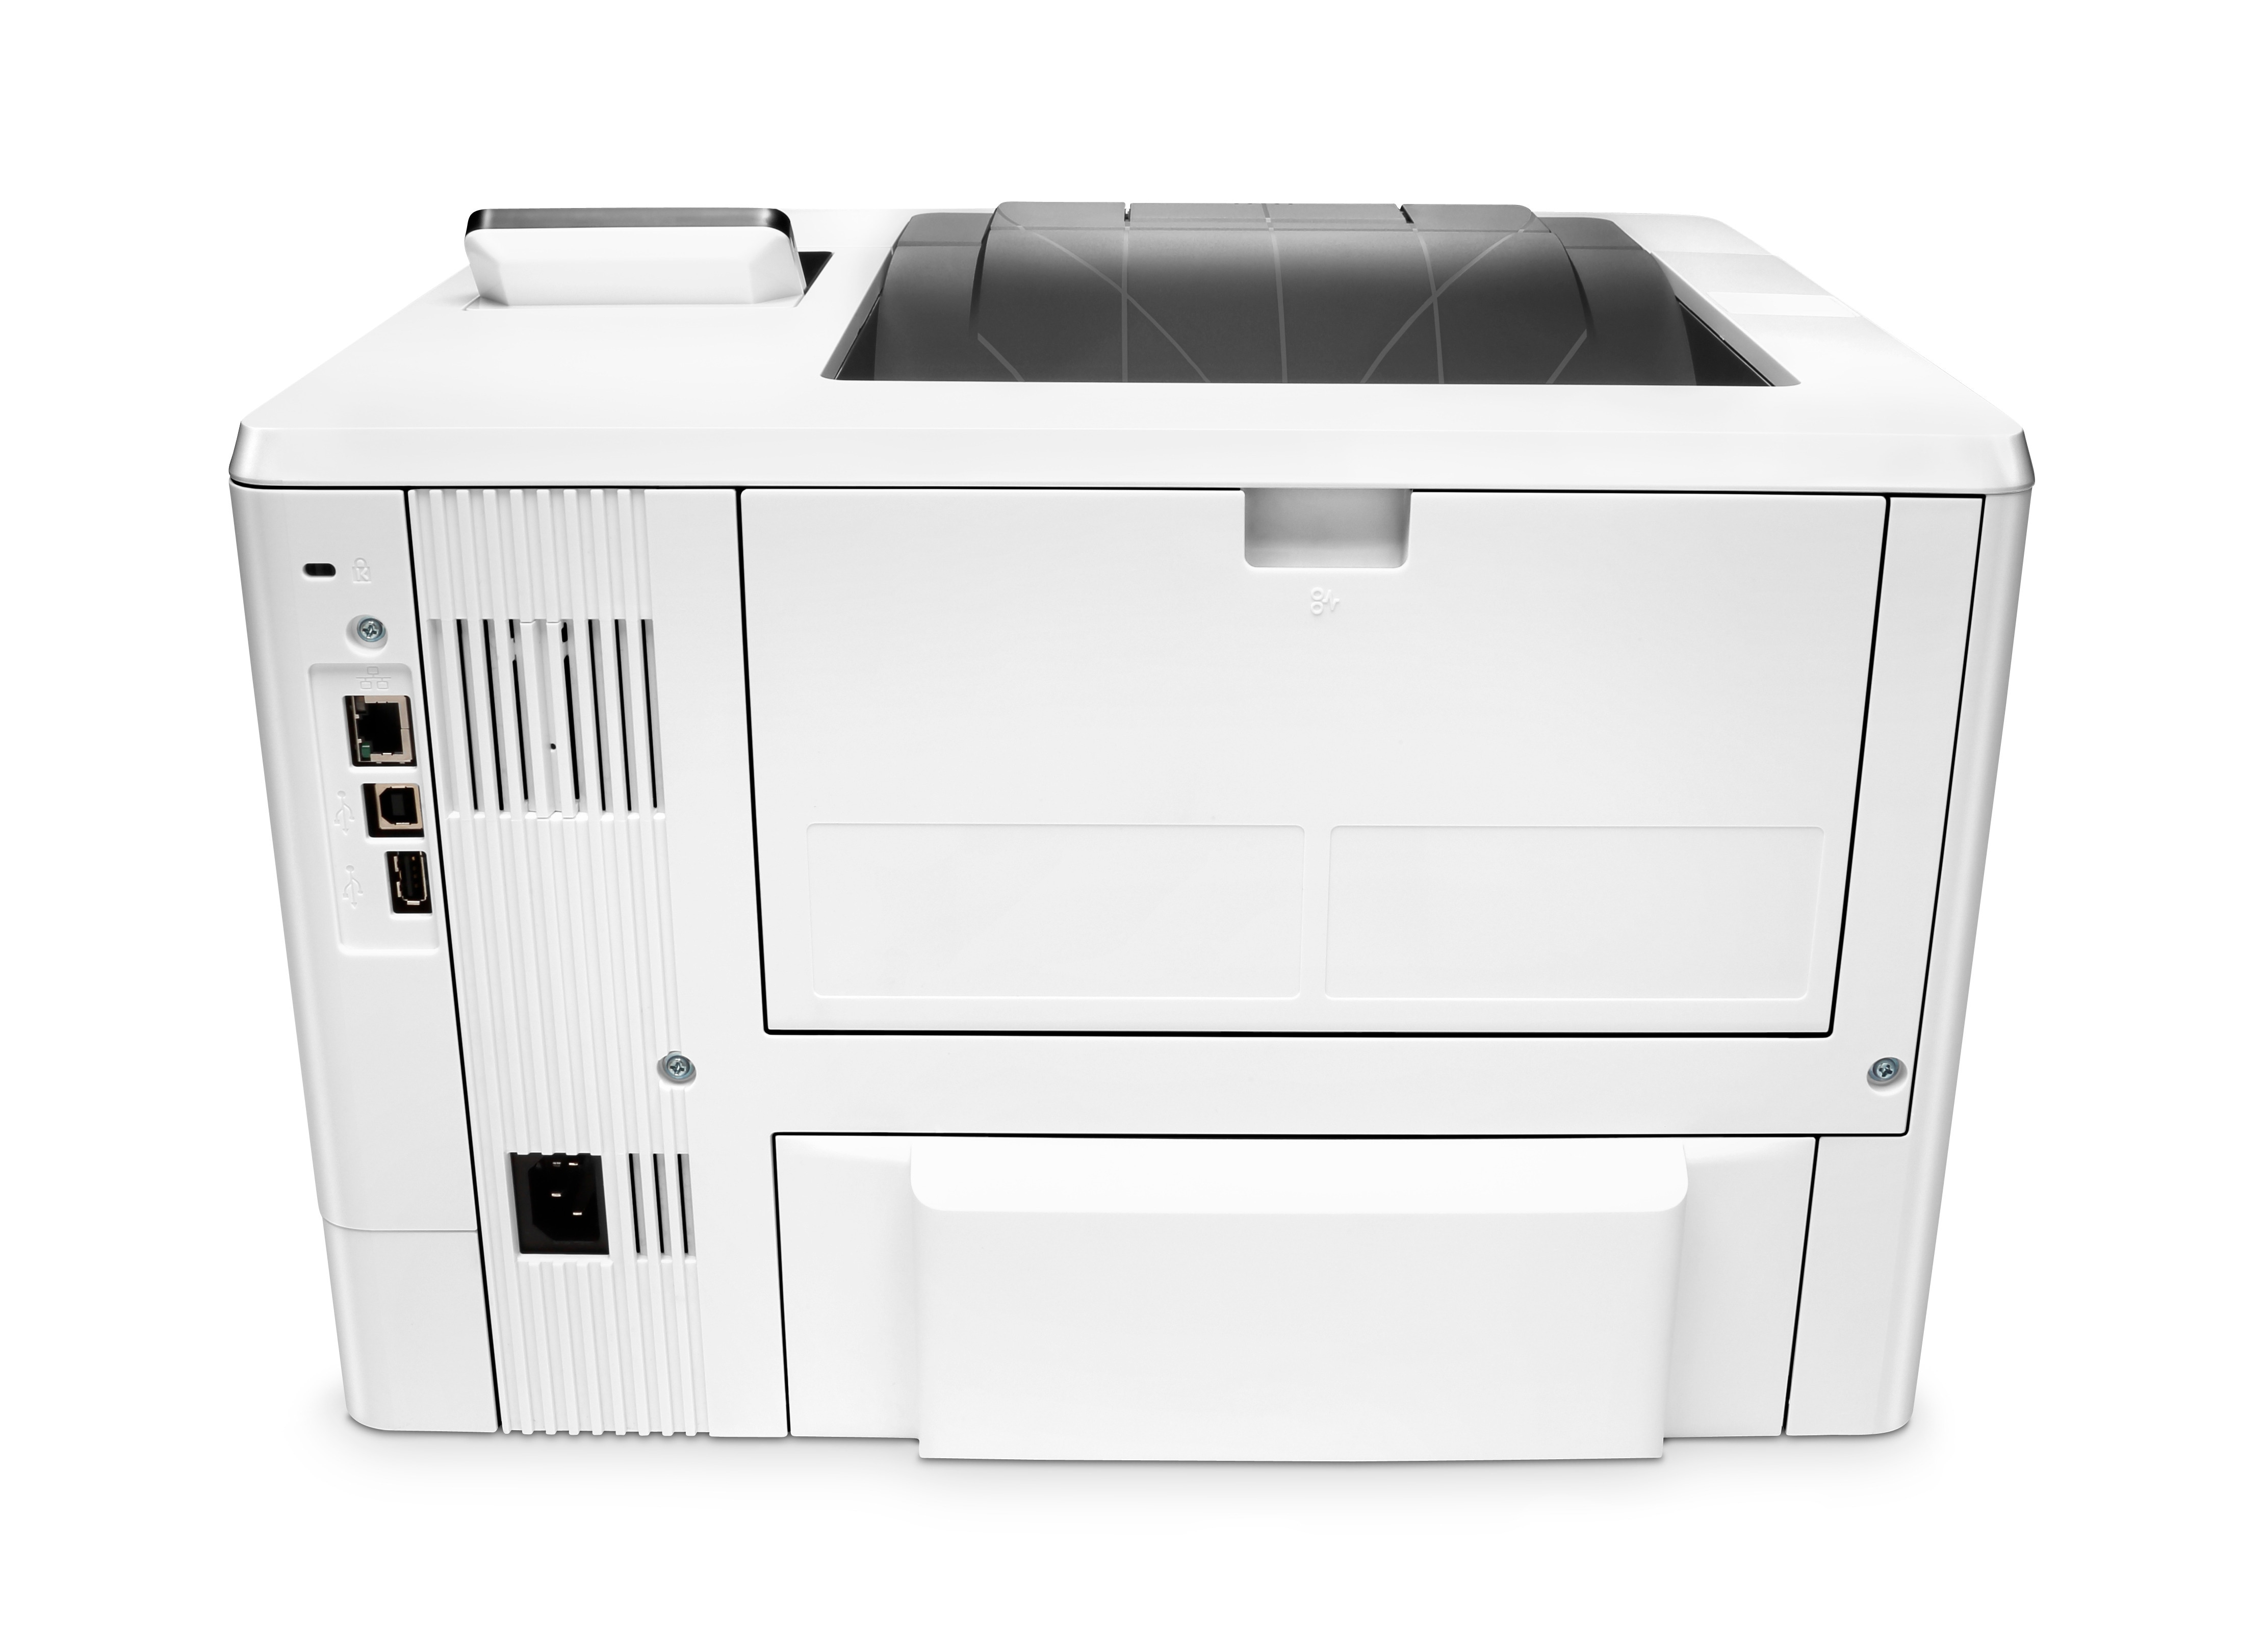 HP Laserjet Pro M501dn Printer